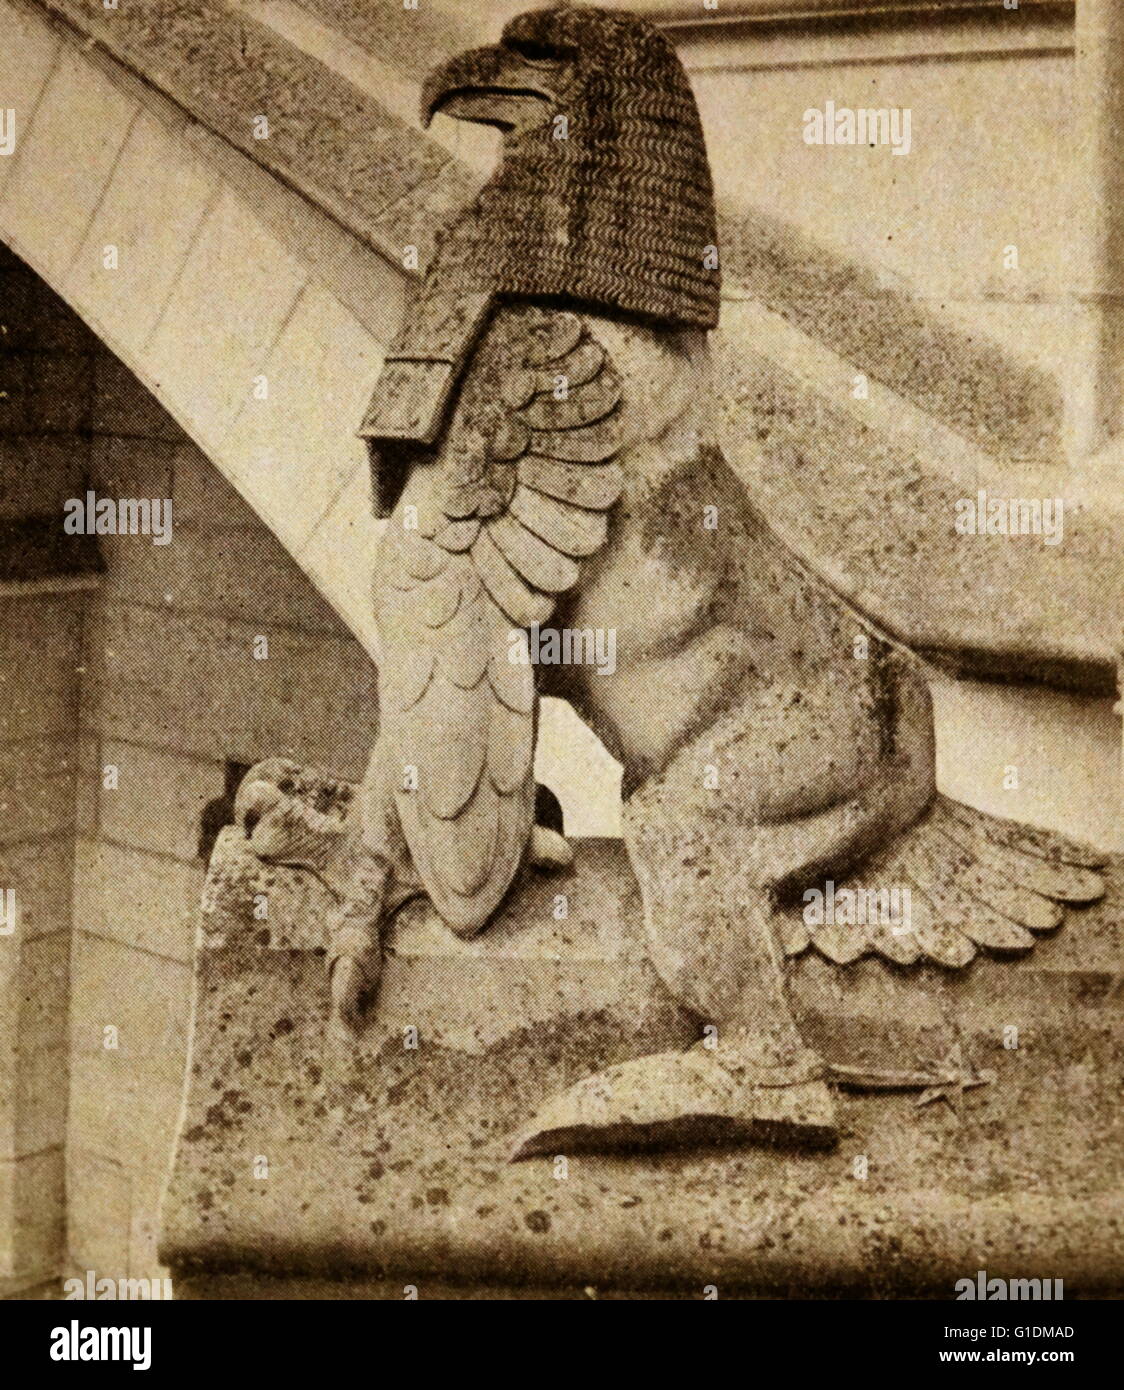 Tirage photographique d'une figure de pierre à cheval sur les marches à l'entrée du Château de Pierrefonds. Le château est situé sur la commune de Pierrefonds dans l'Oise département de la France Banque D'Images